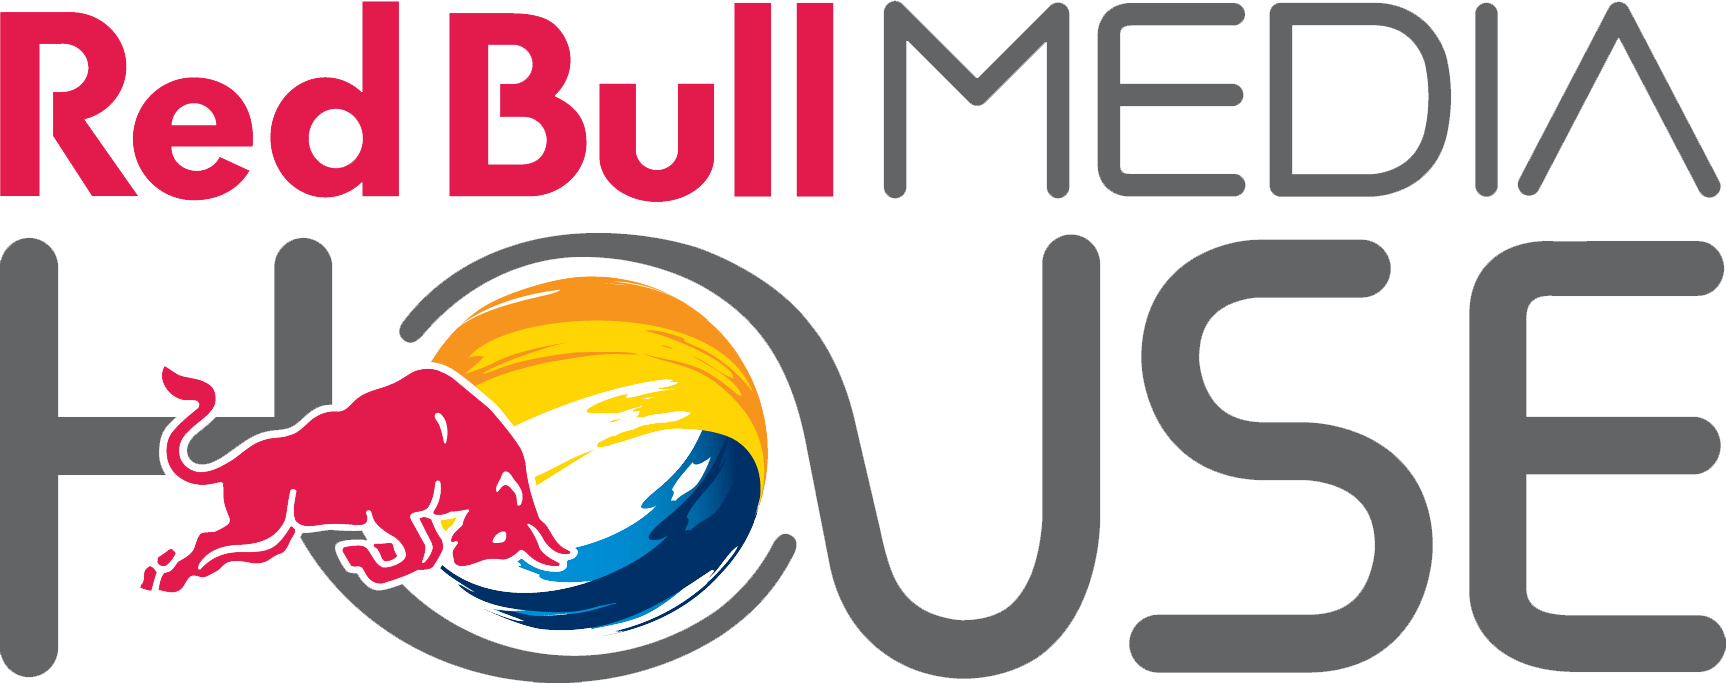 Media House Logo - Red Bull Media House Logo